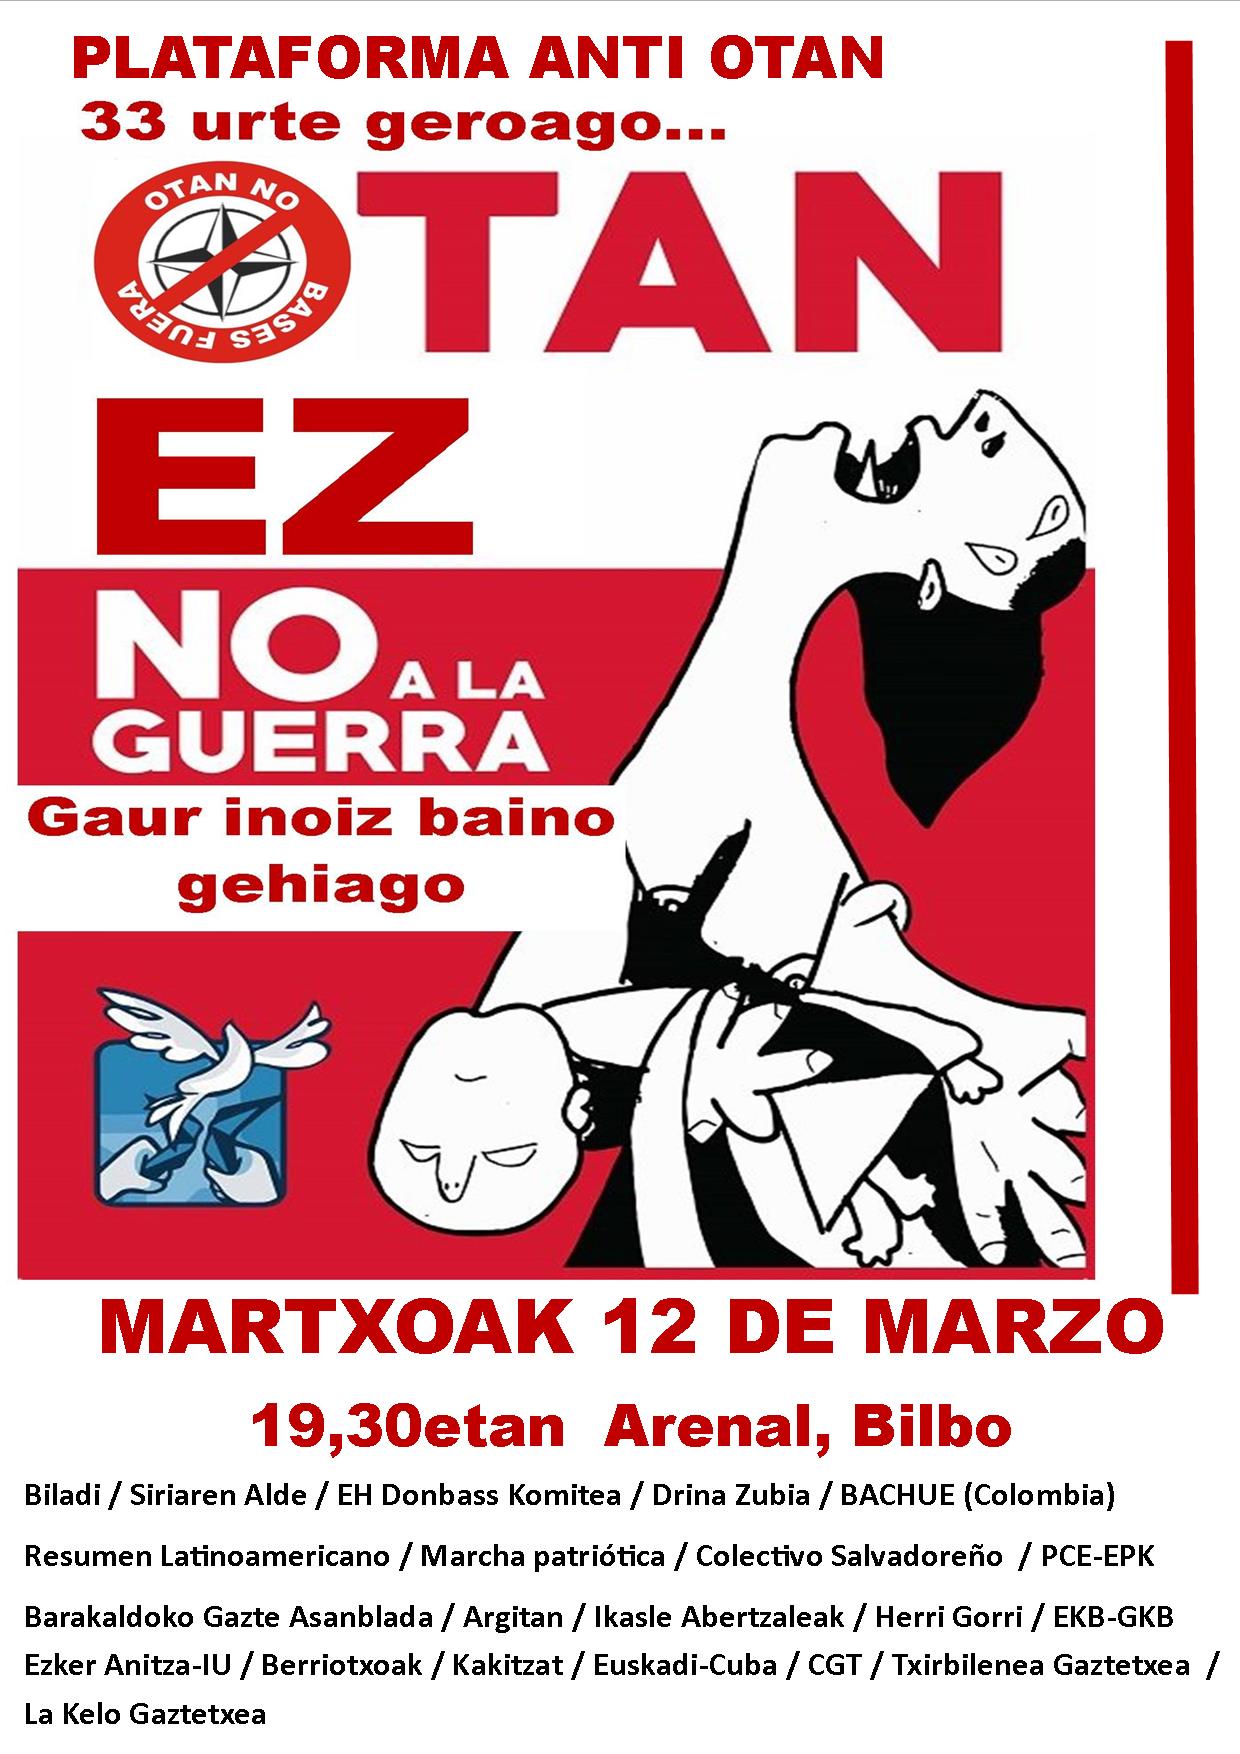 Concentración anti OTAN en Bilbao.  33 urte geroago… OTAN EZ. Martxoak 12 de Marzo.